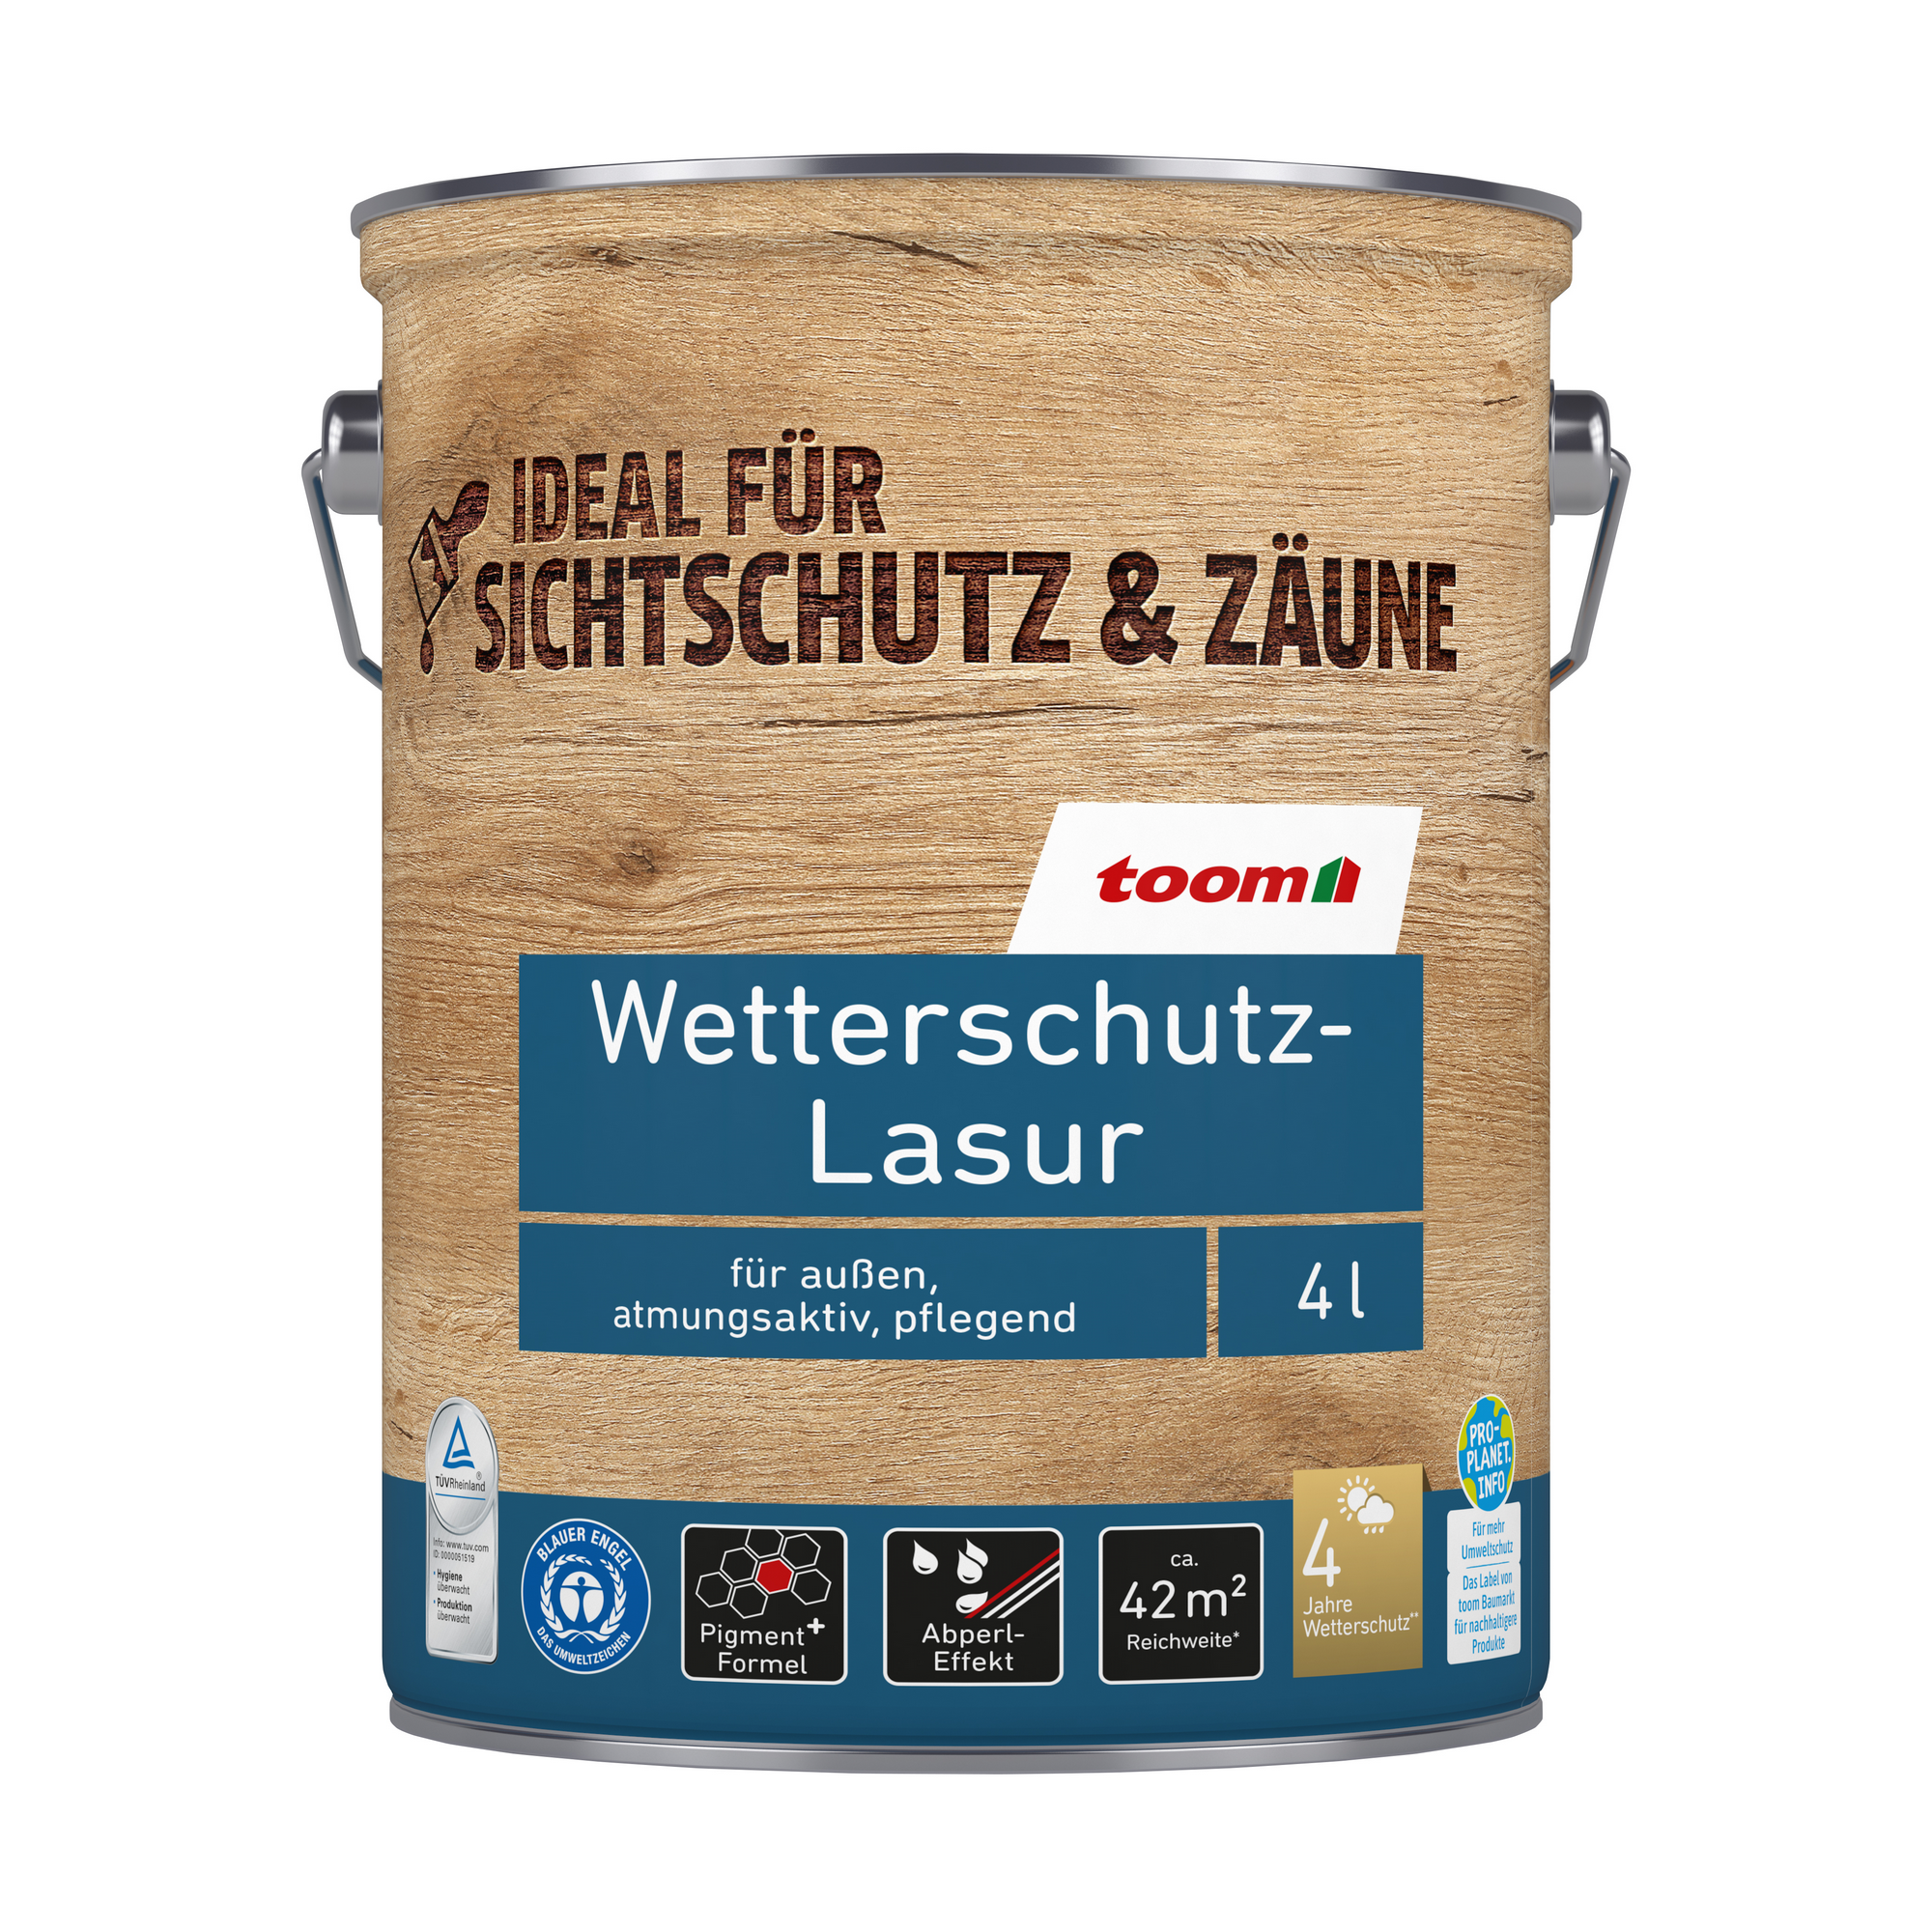 Wetterschutz-Lasur nussbaumfarben 4 l + product picture